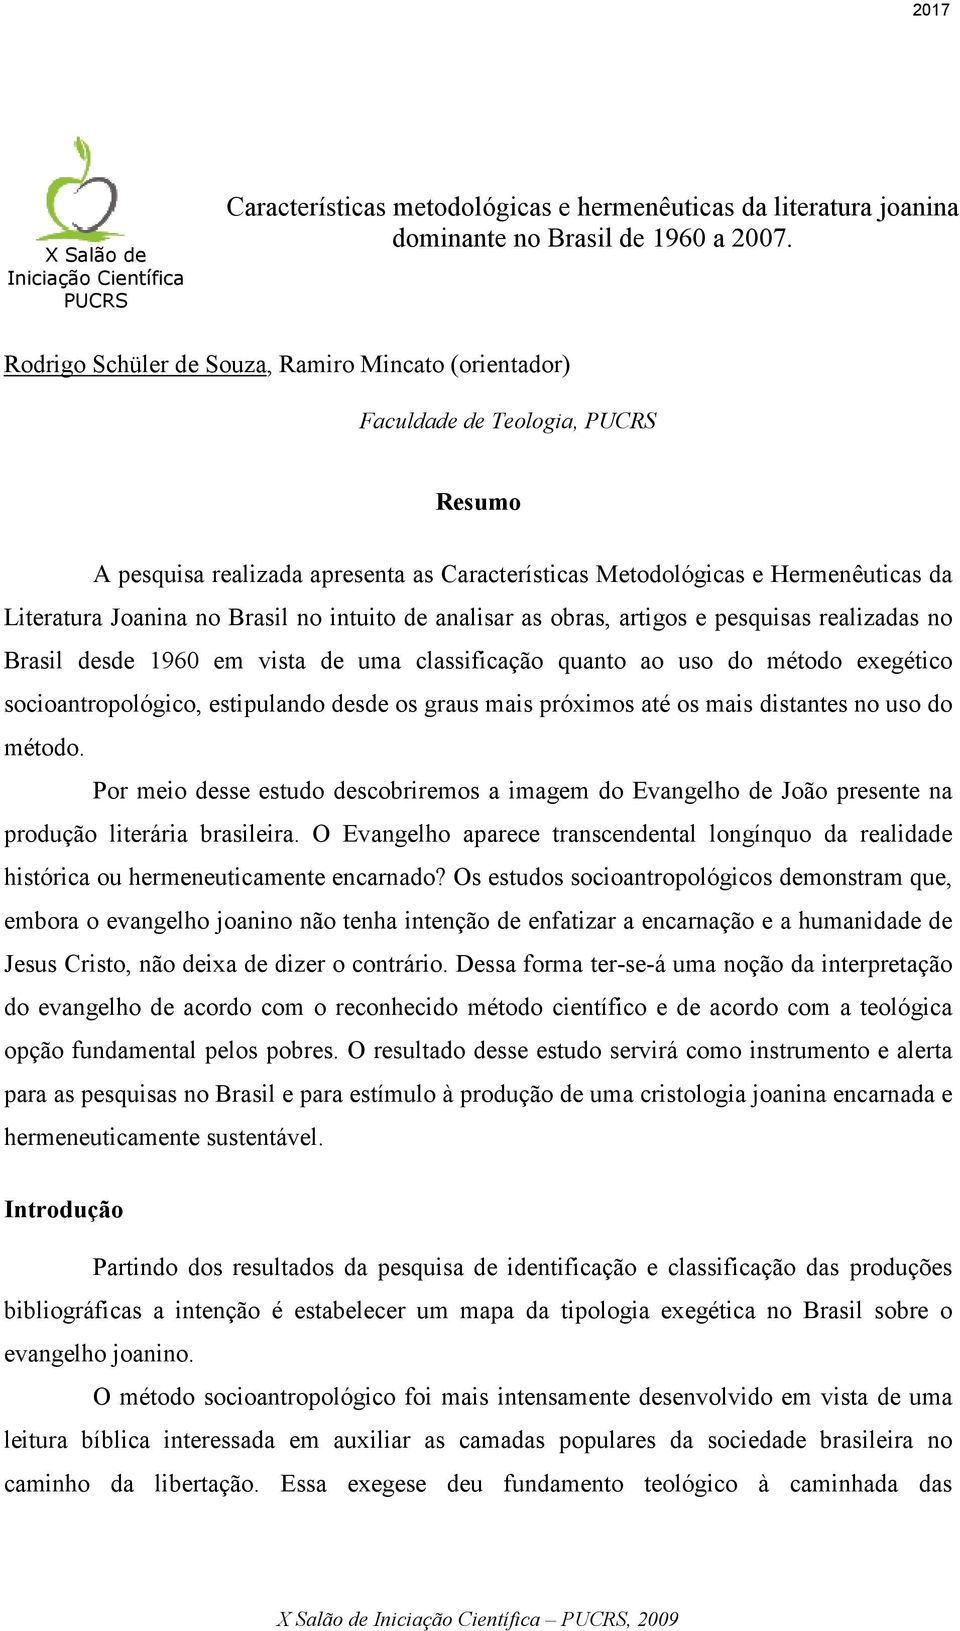 Brasil no intuito de analisar as obras, artigos e pesquisas realizadas no Brasil desde 1960 em vista de uma classificação quanto ao uso do método exegético socioantropológico, estipulando desde os